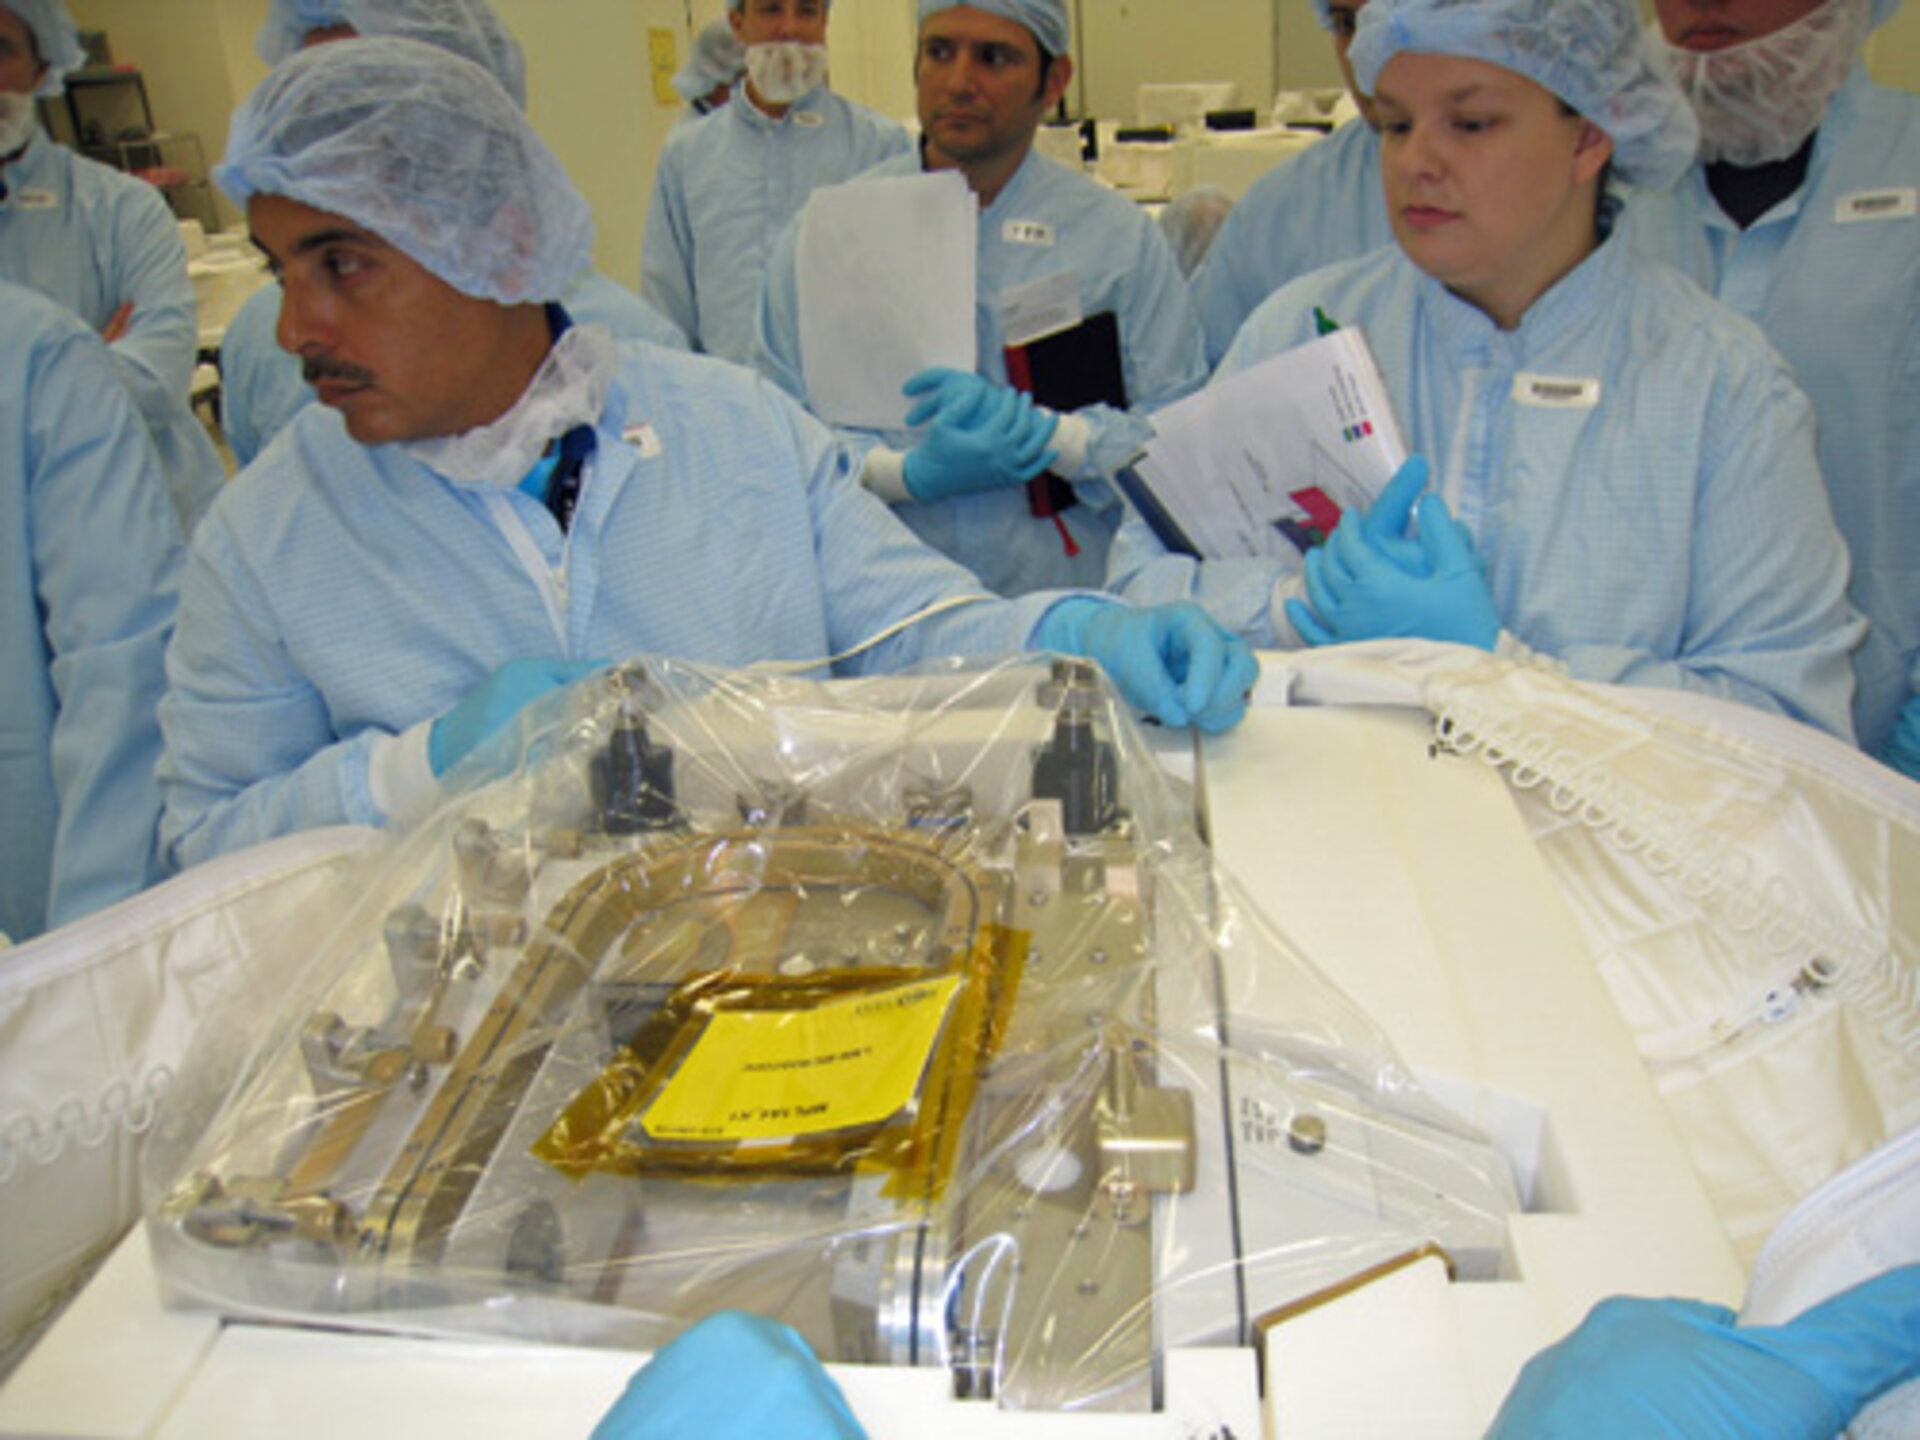 José med ett välinpackat och inplastat mikroskop som ska upp till ISS för experimentanvändning.